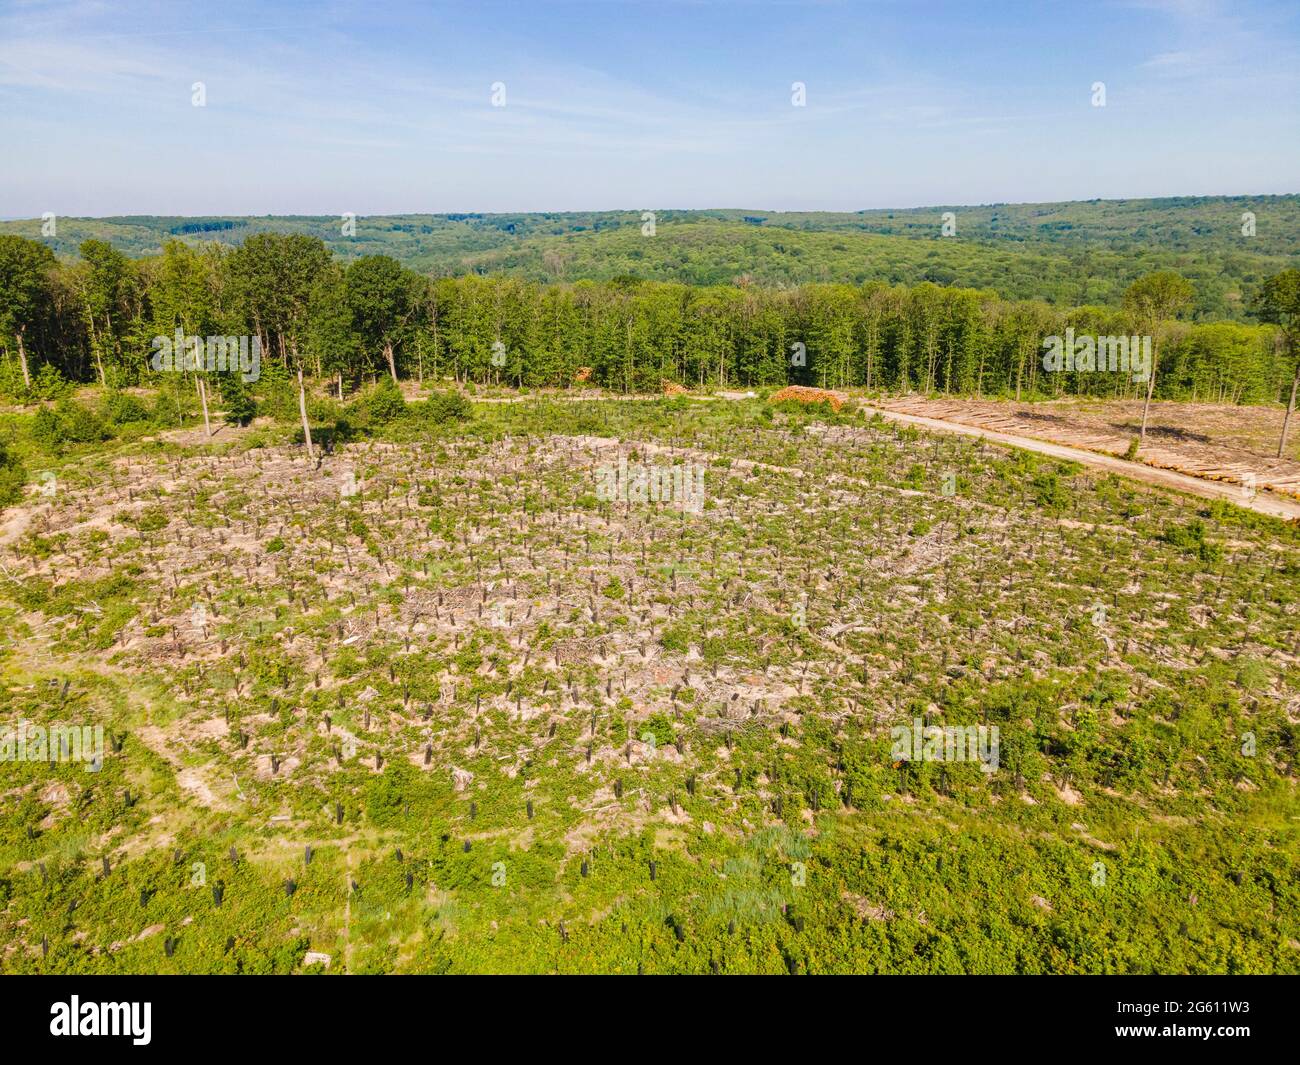 France, Val d'Oise, Forêt de Montmorency, parcelle de gauche avec jeunes chênes et parcelle de droite où les châtaigniers ont été abattus en raison de la maladie de l'encre (vue aérienne) Banque D'Images